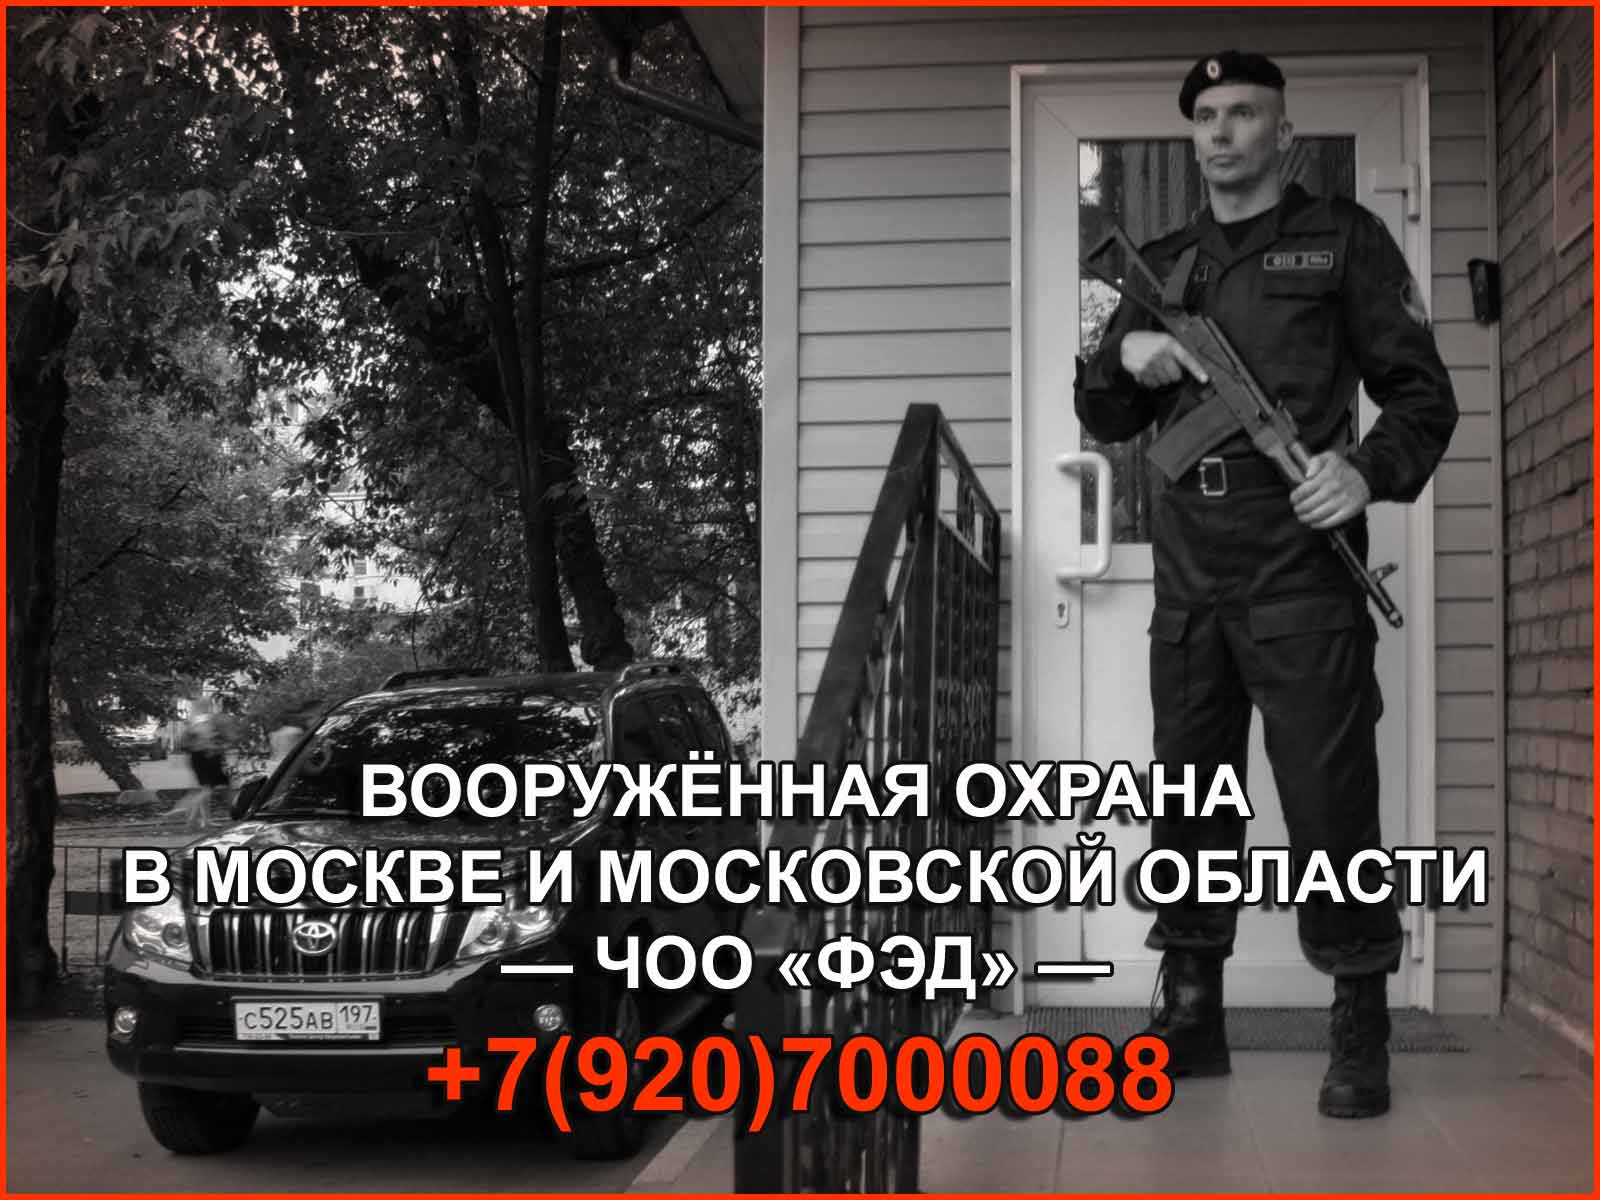 Охранная компания "ФЭД" - ваш надежный партнер, способный обеспечить высокий уровень безопасности и защиты вашего объекта в Москве и МО